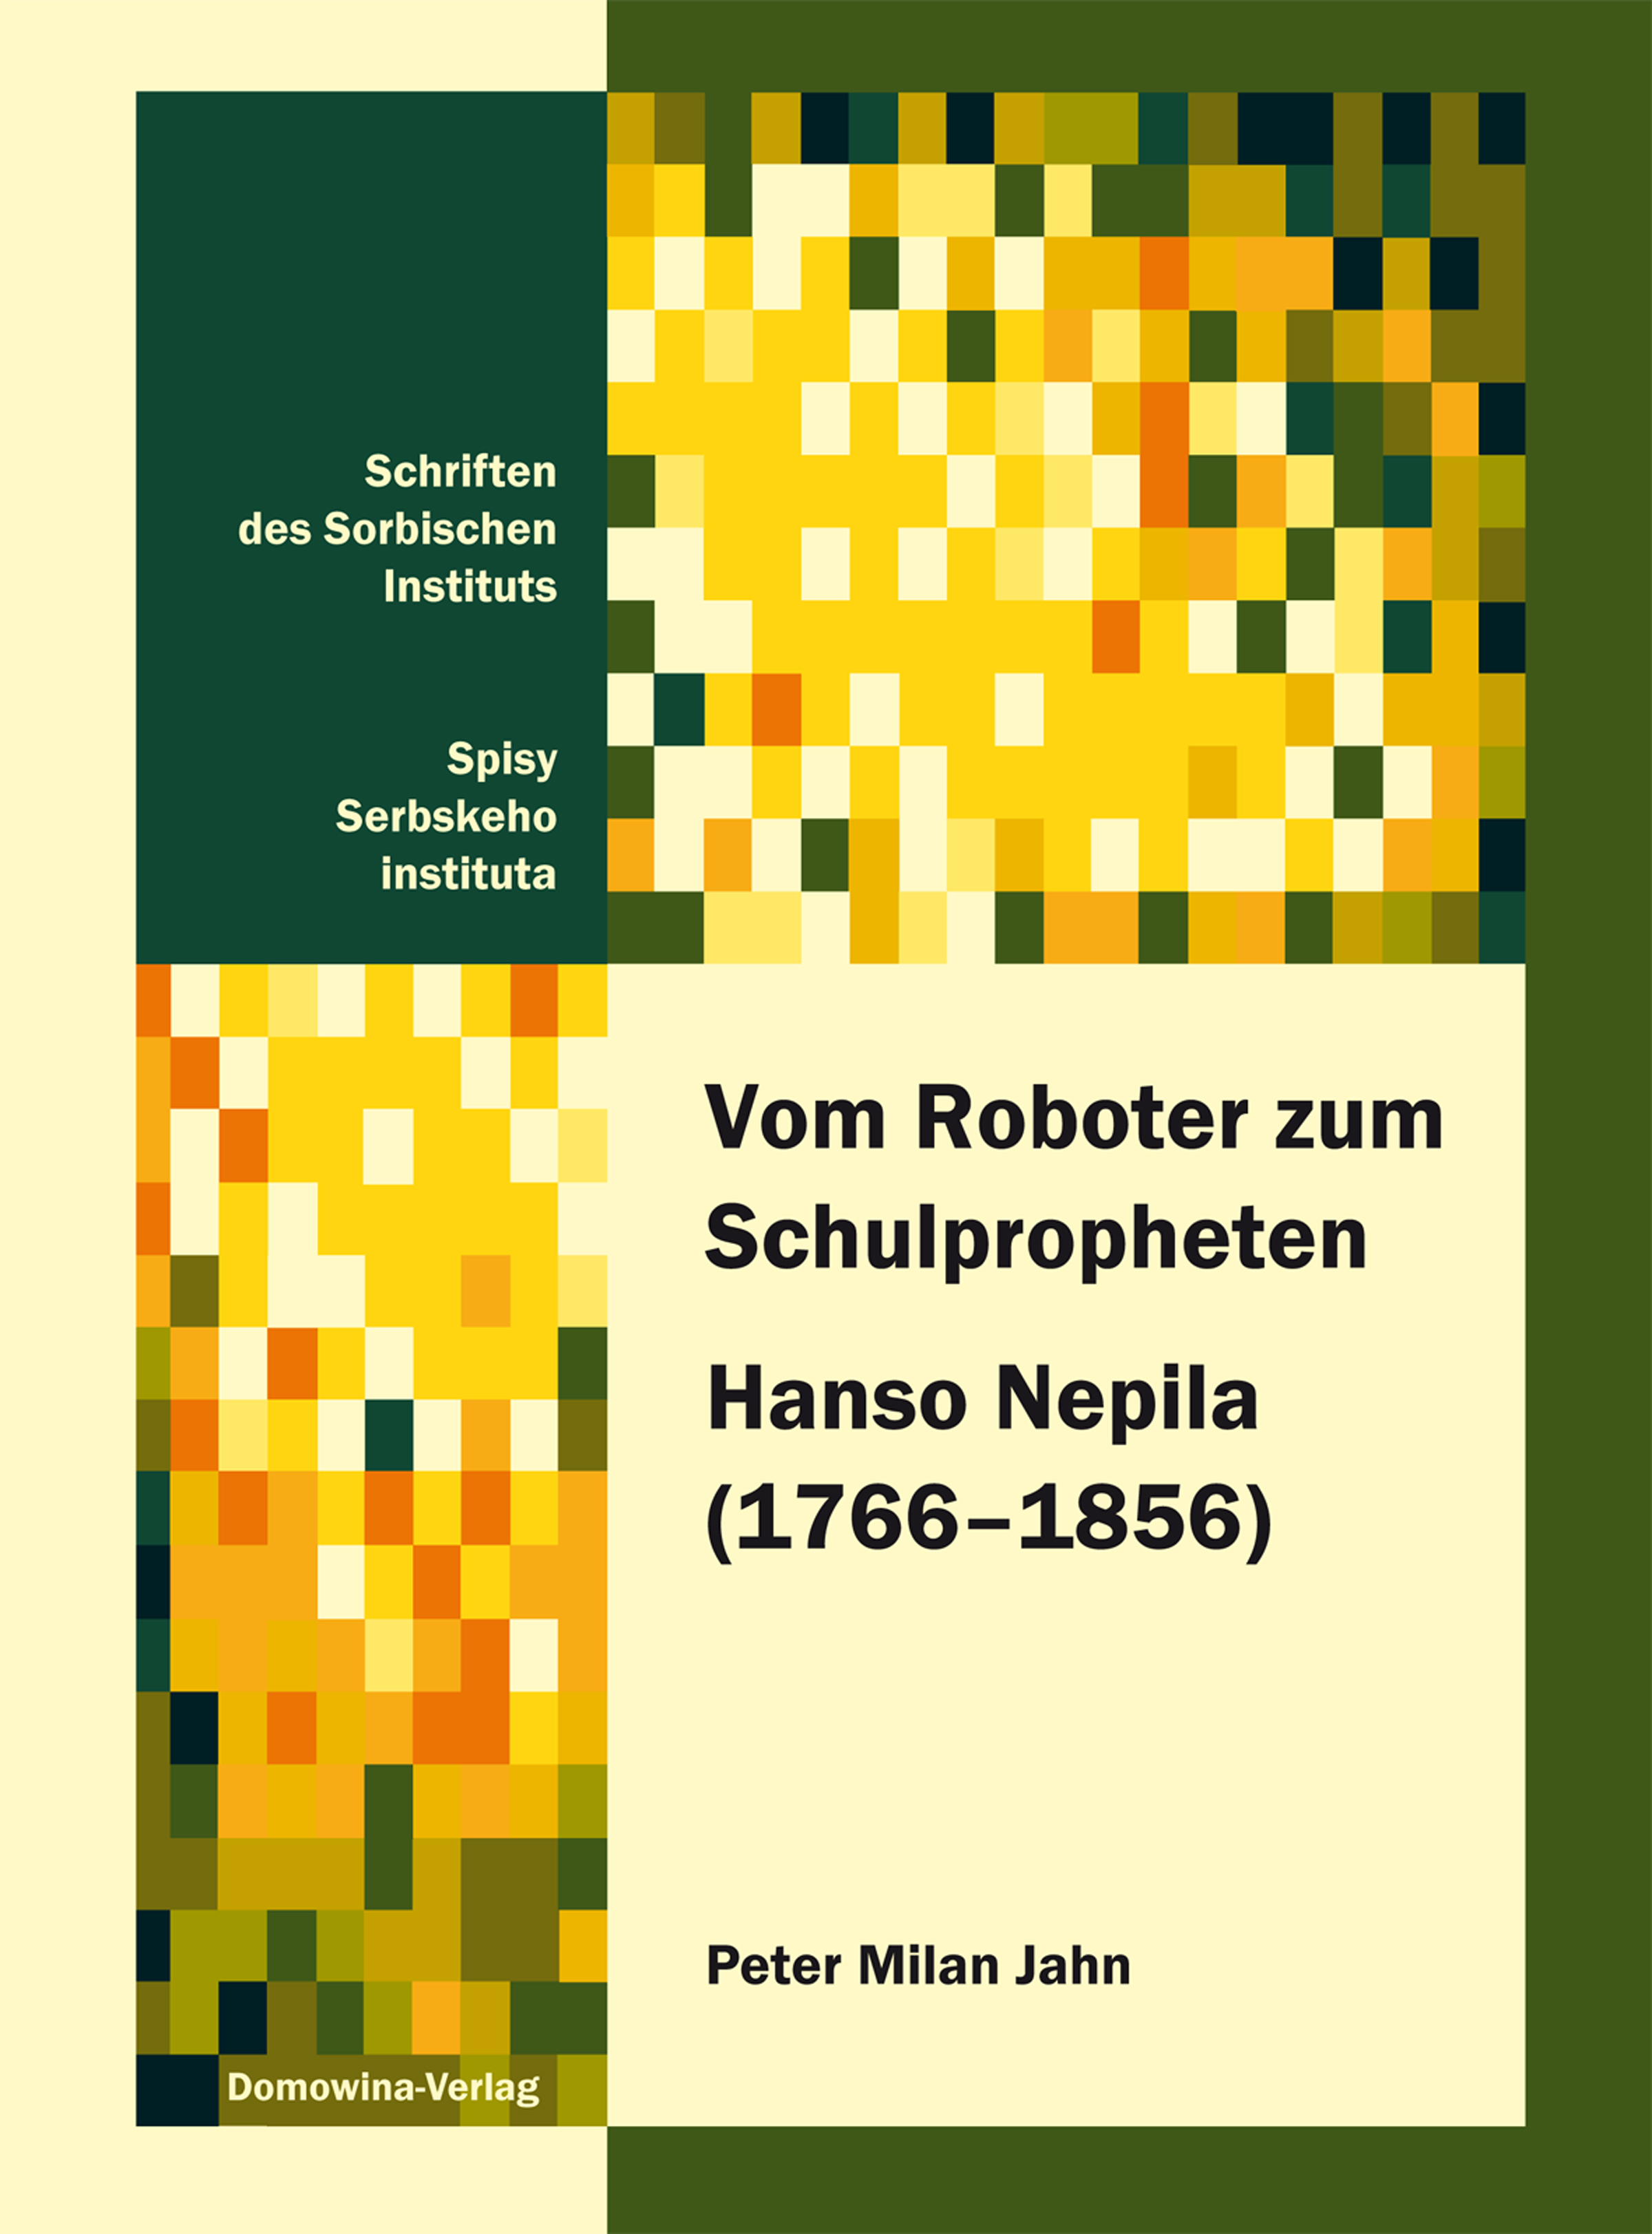 Vom Roboter zum Schulpropheten Hanso Nepila (17661856)